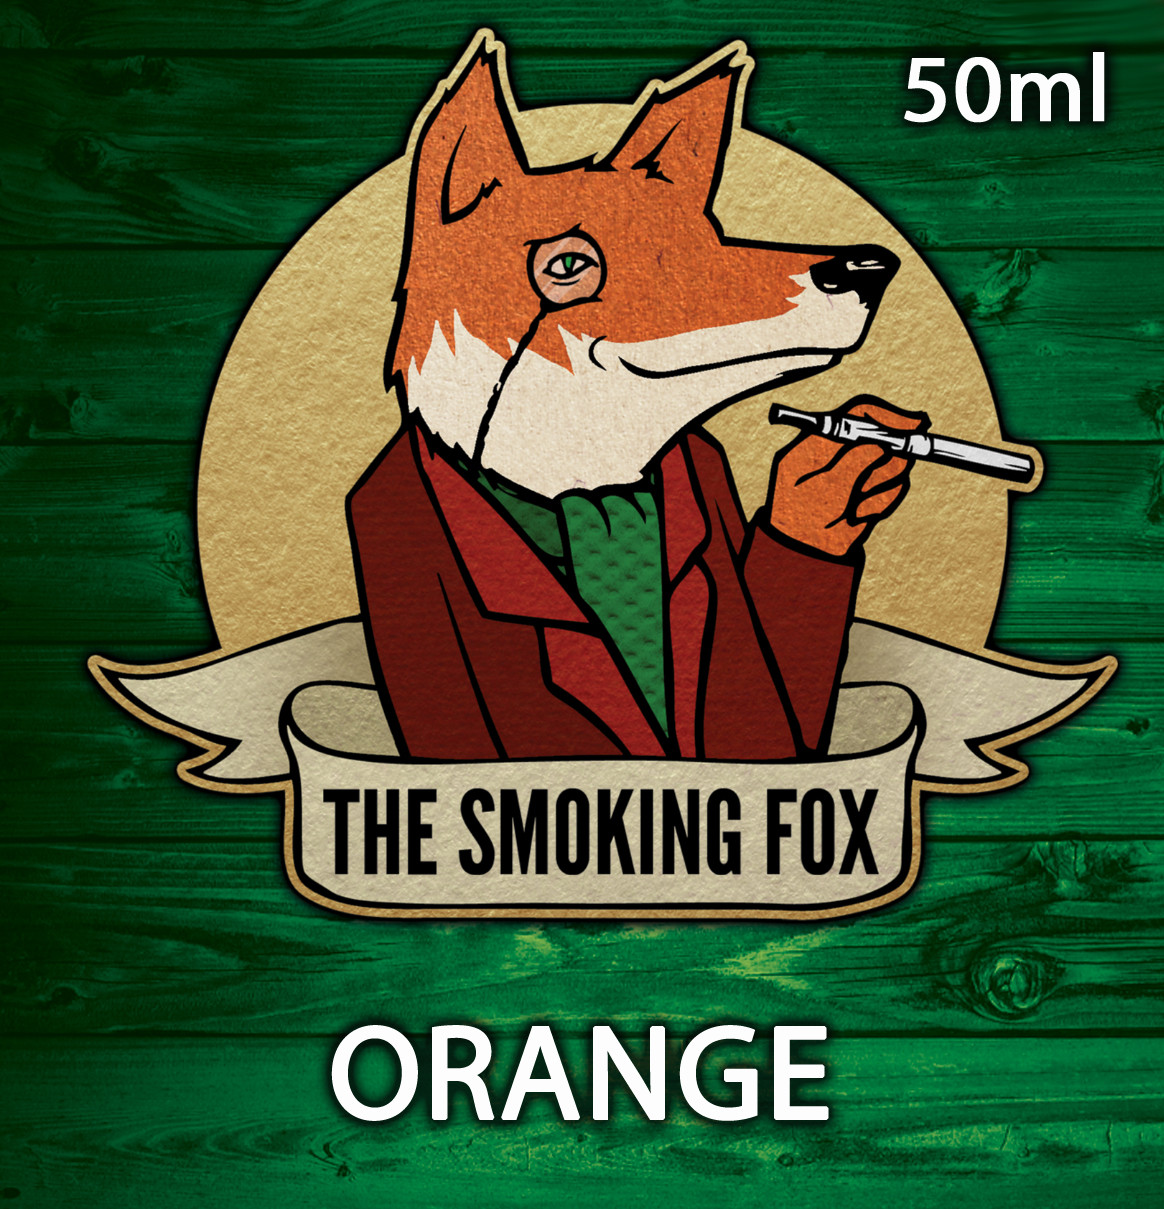 THE SMOKING FOX 50ml - ORANGE